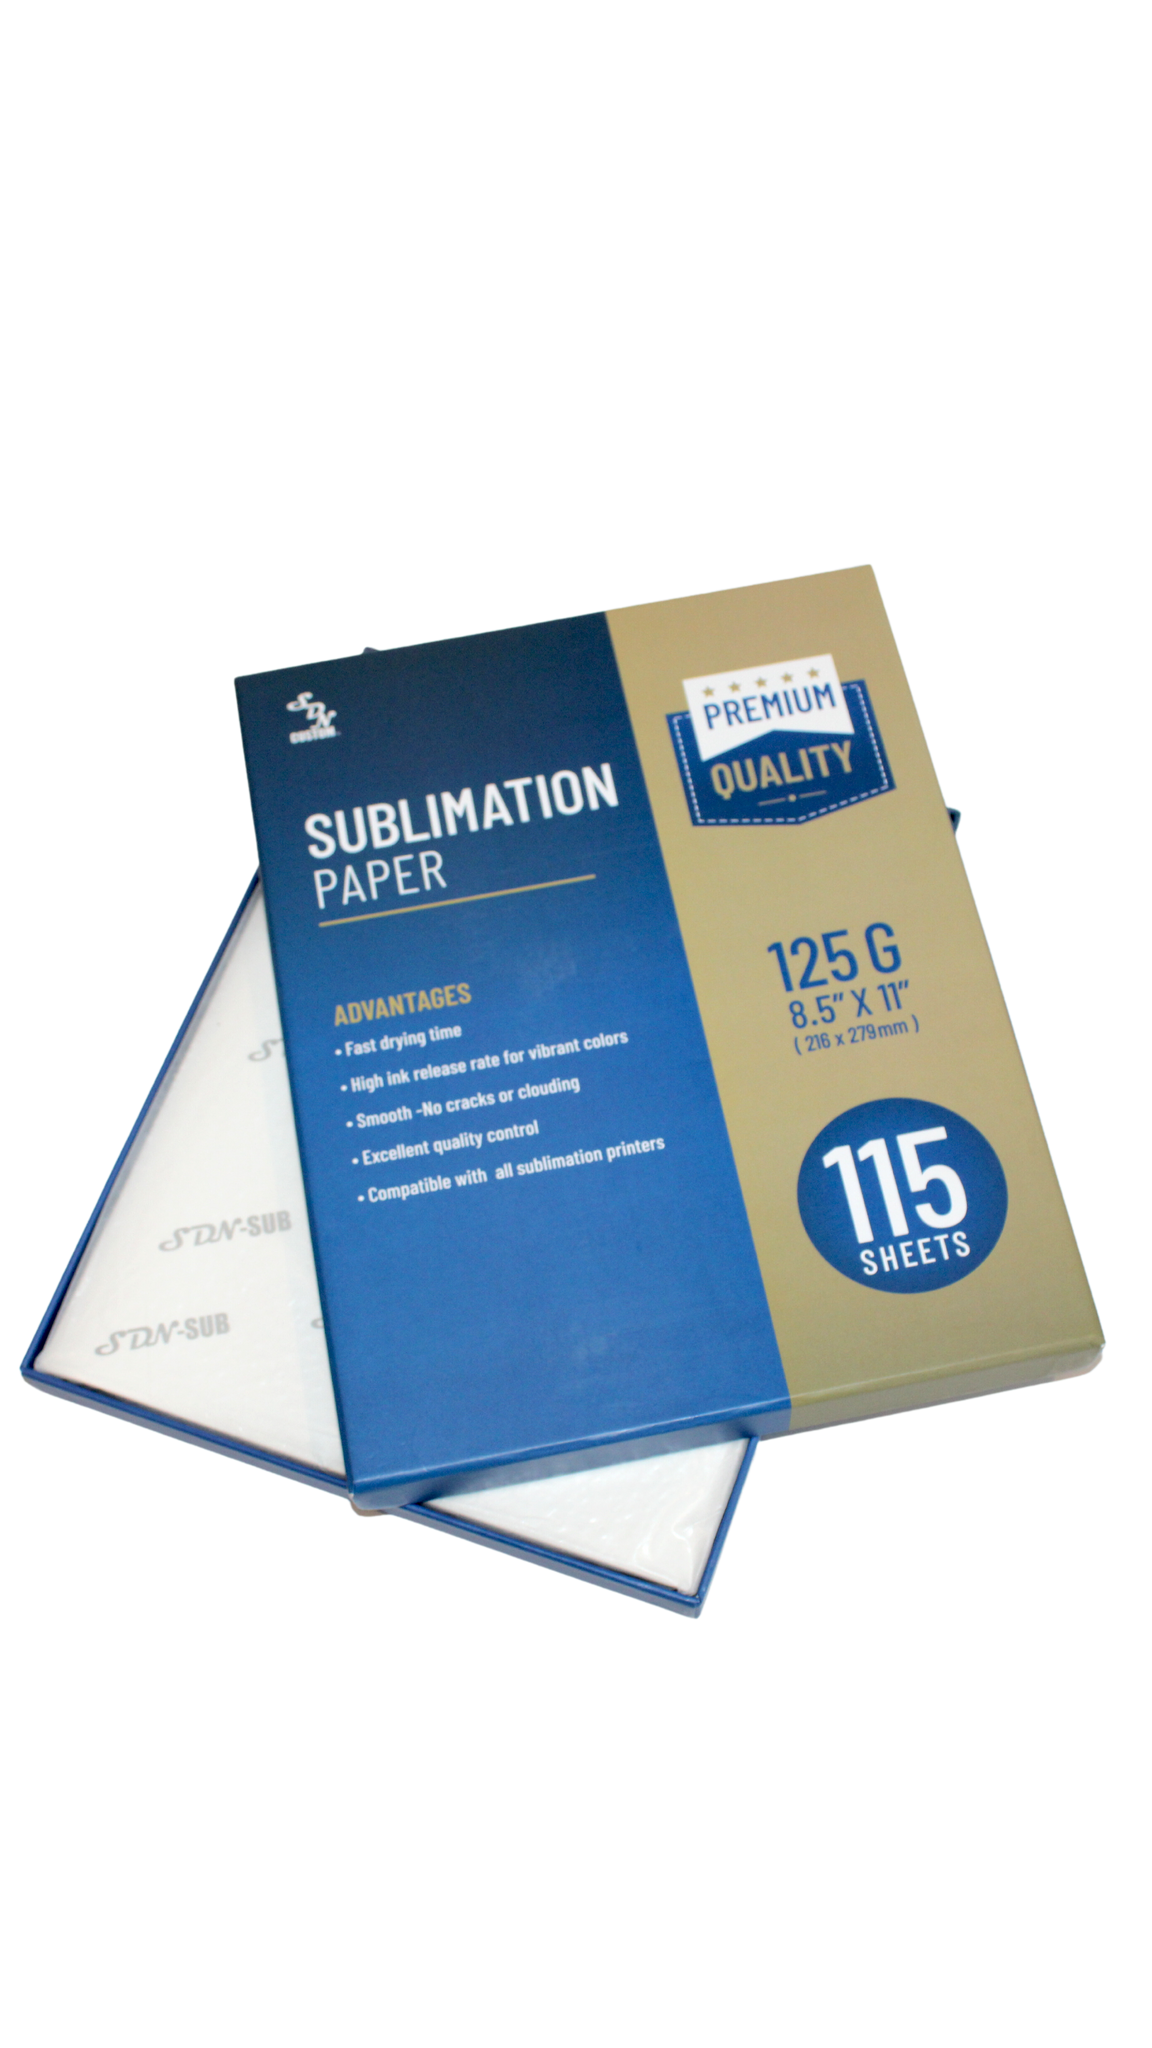 SDN Sublimation Inc Sublimation Paper 125g 115 Sheets - Premium Qualit –  SDN SUBLIMATION